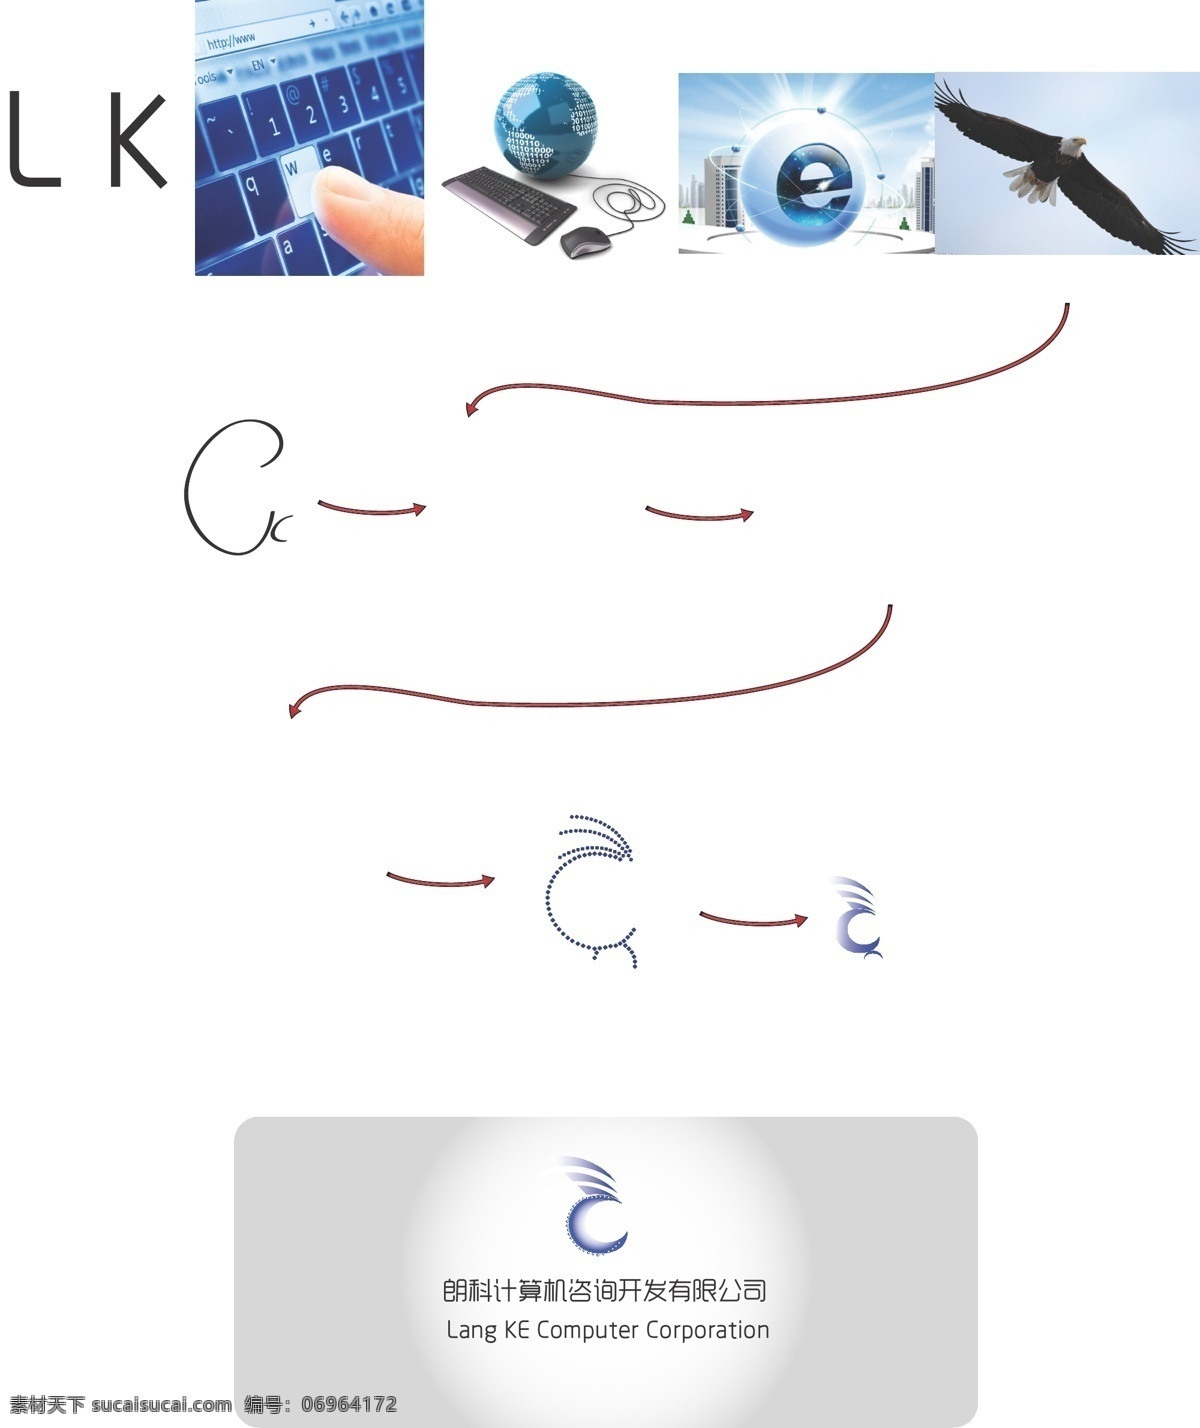 标识标志图标 标志 创新 创意 科技 蓝色 企业 logo 计算机 公司 矢量 模板下载 psd源文件 logo设计